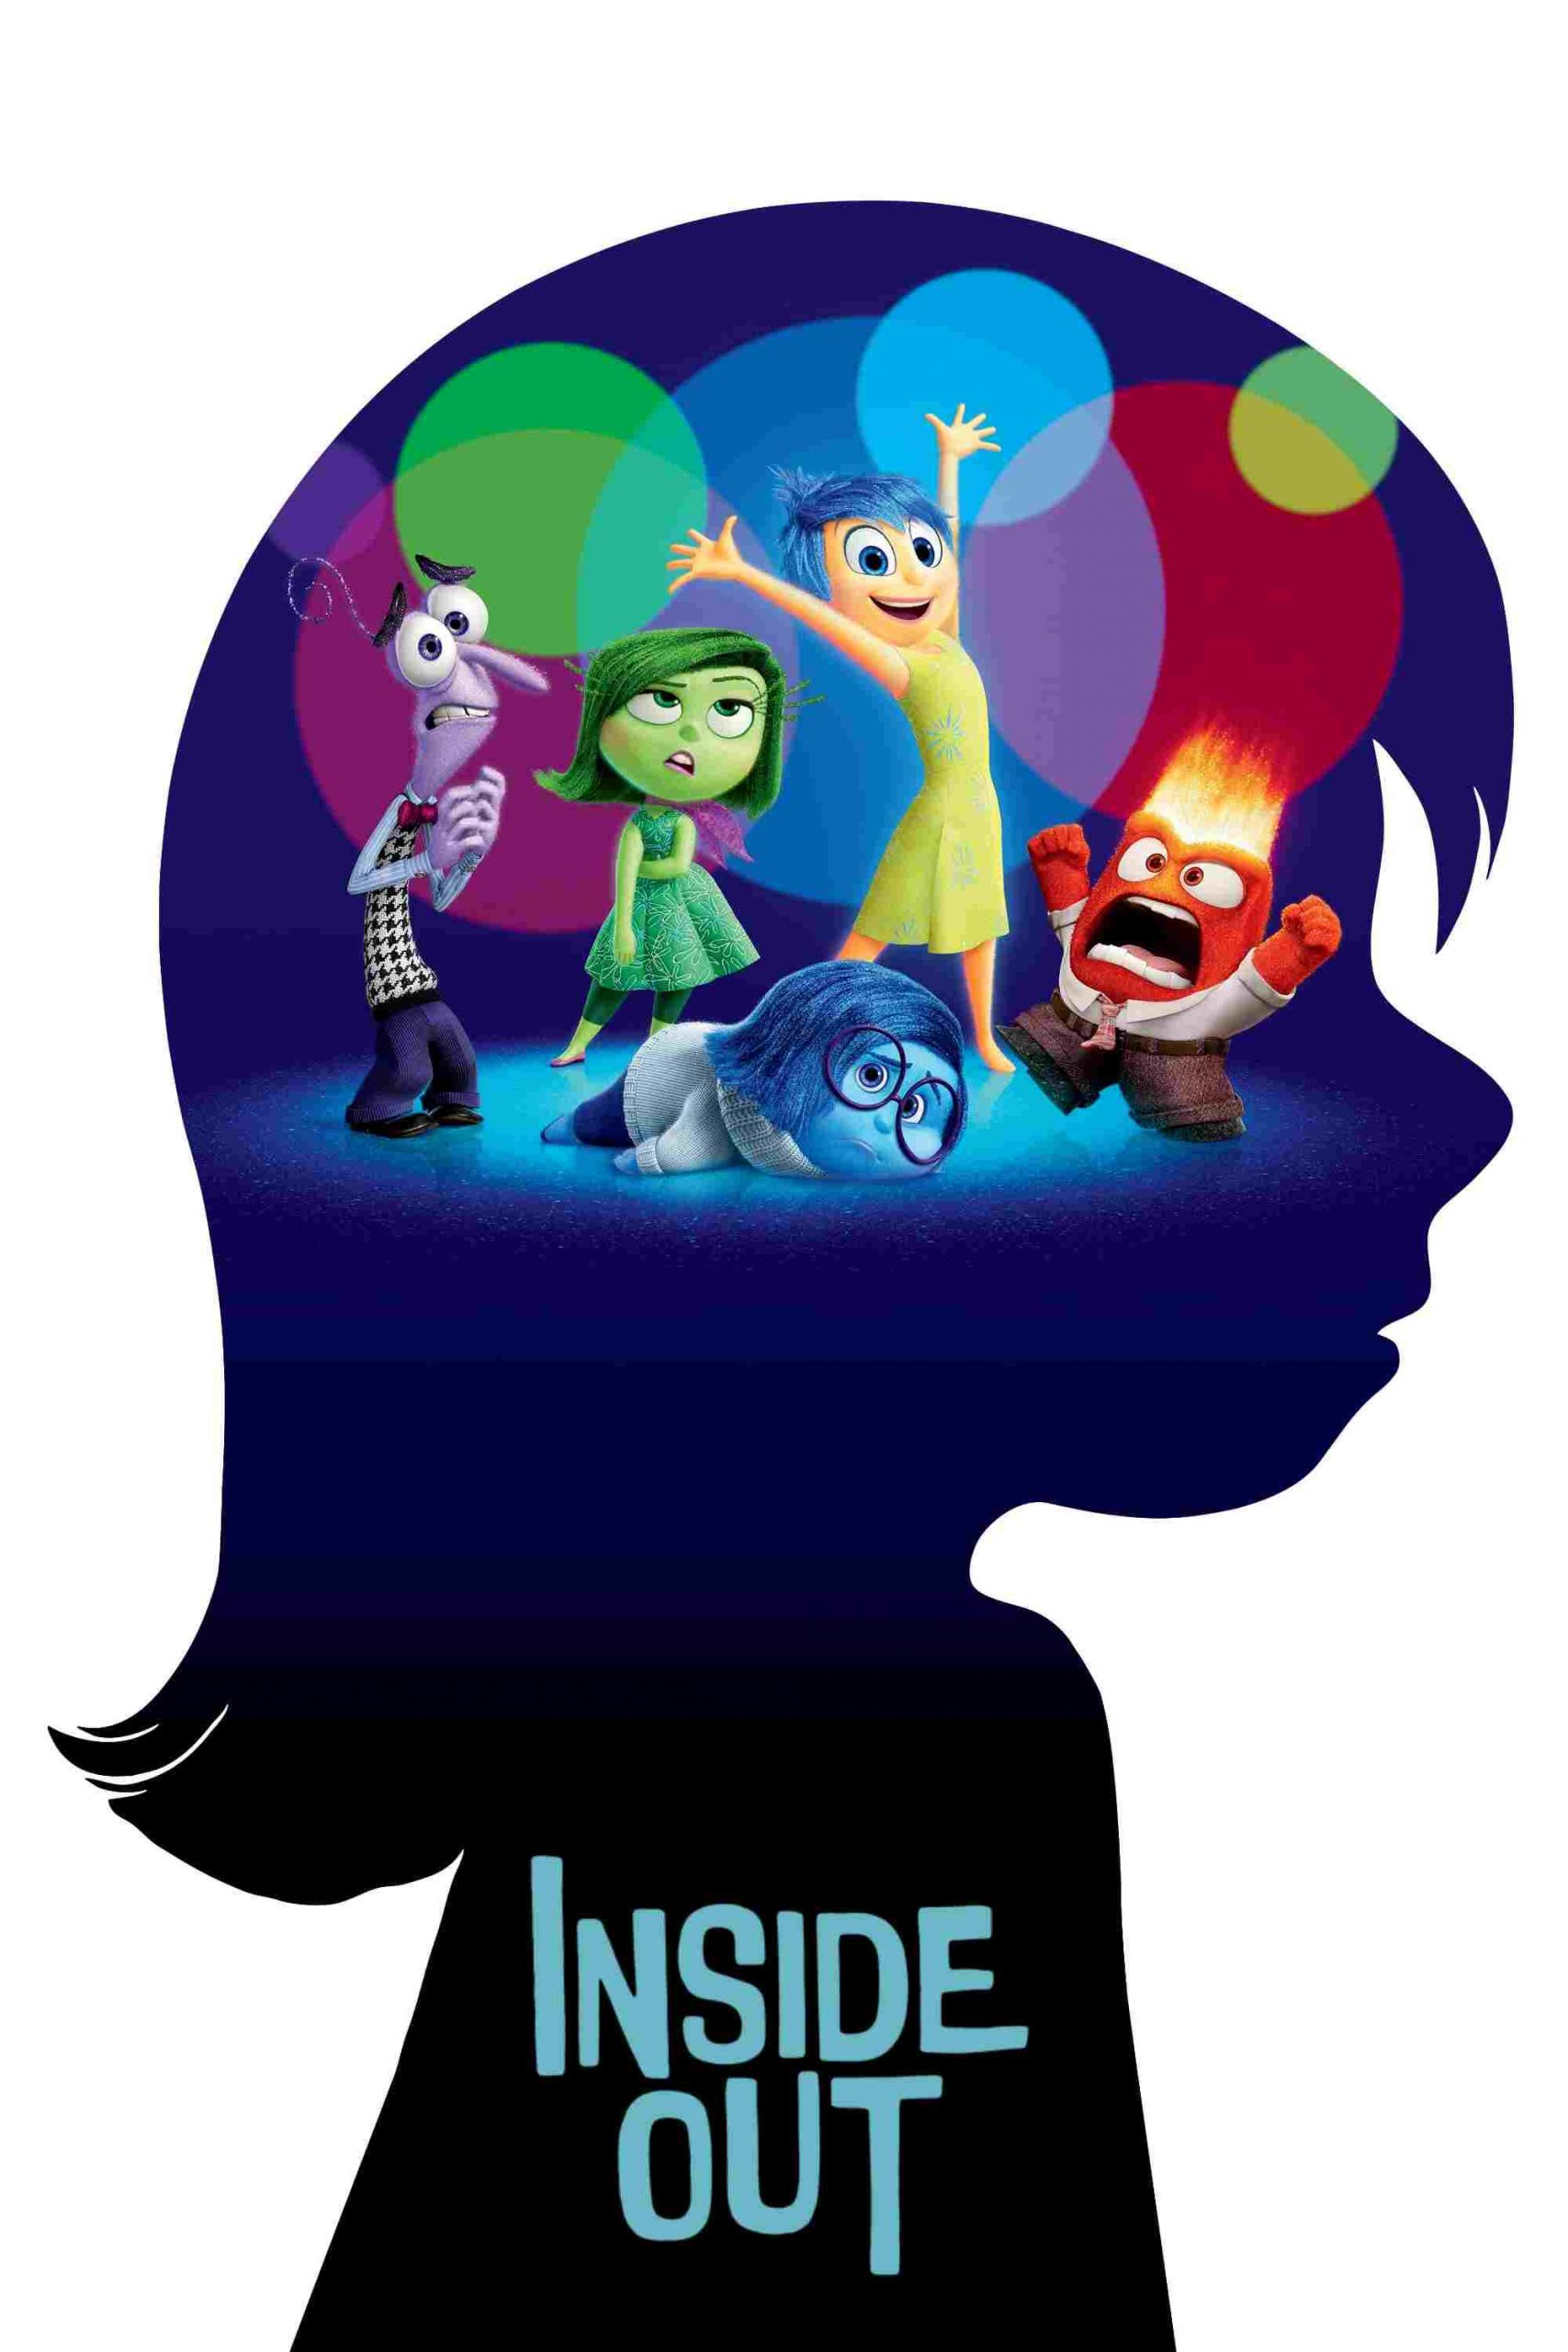 هیجان، محور بقای انسان: تحلیل روانشناسی انیمیشن Inside Out